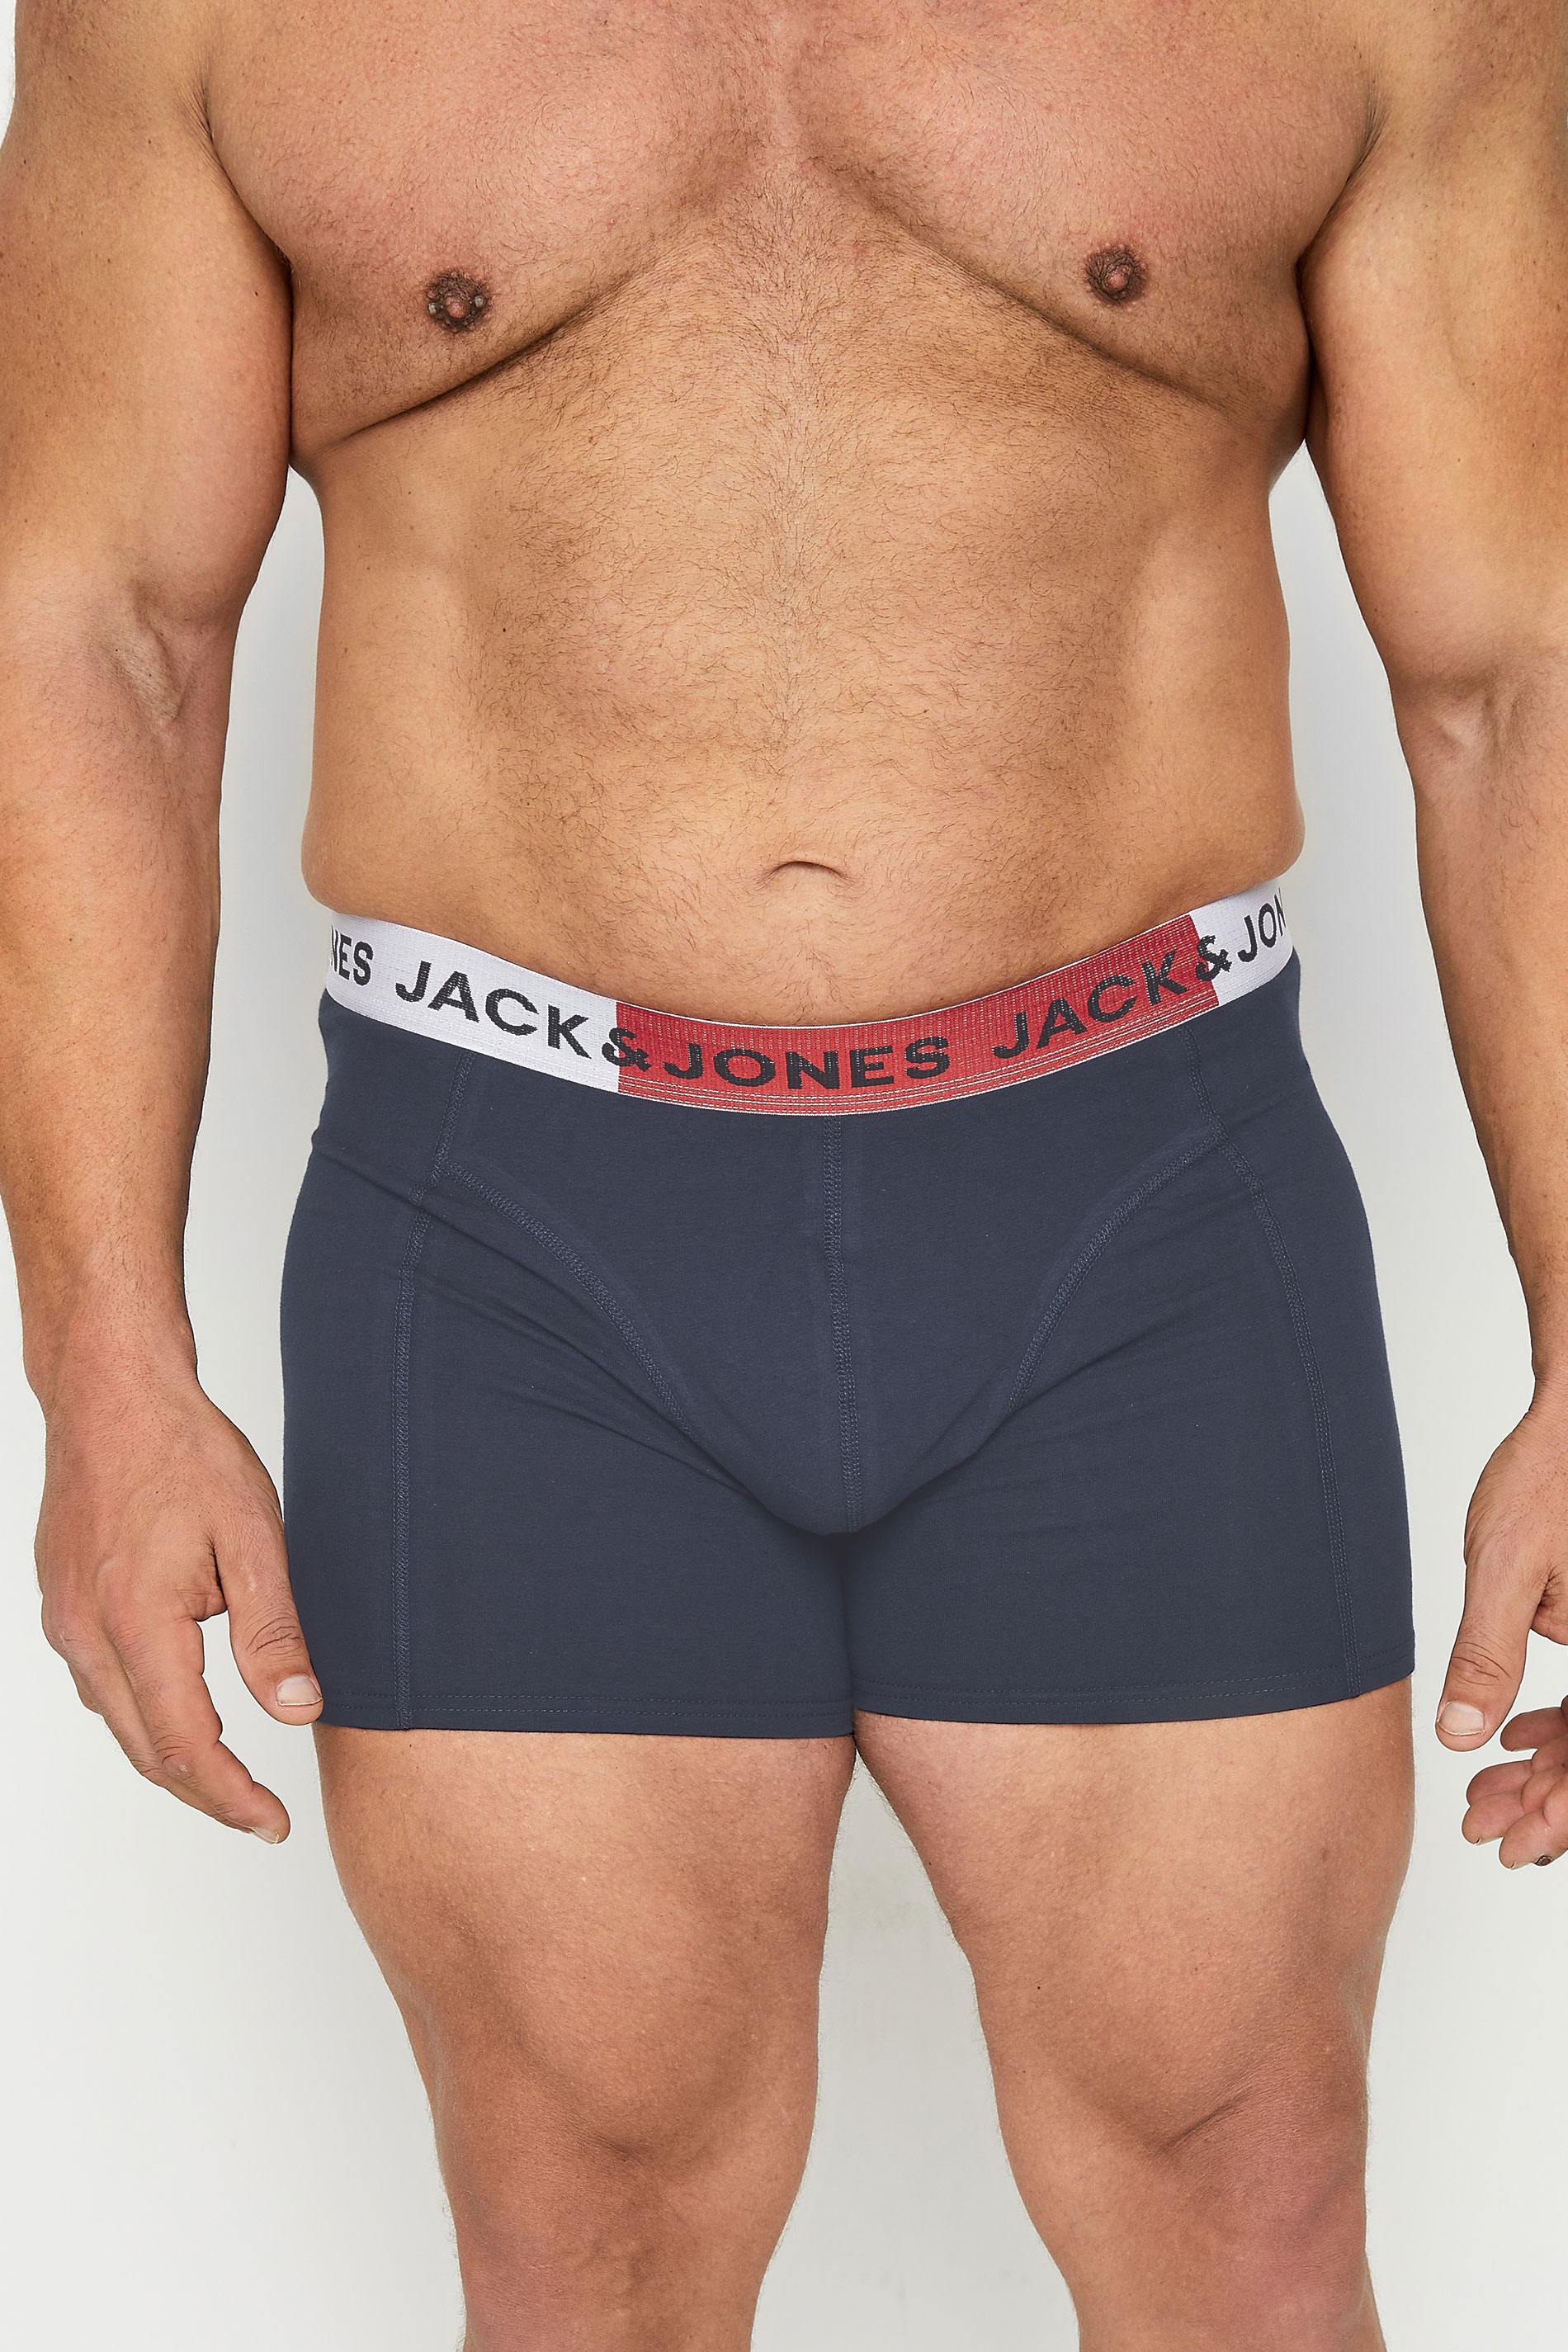 JACK & JONES Black & Blue 3 Pack Trunks 3